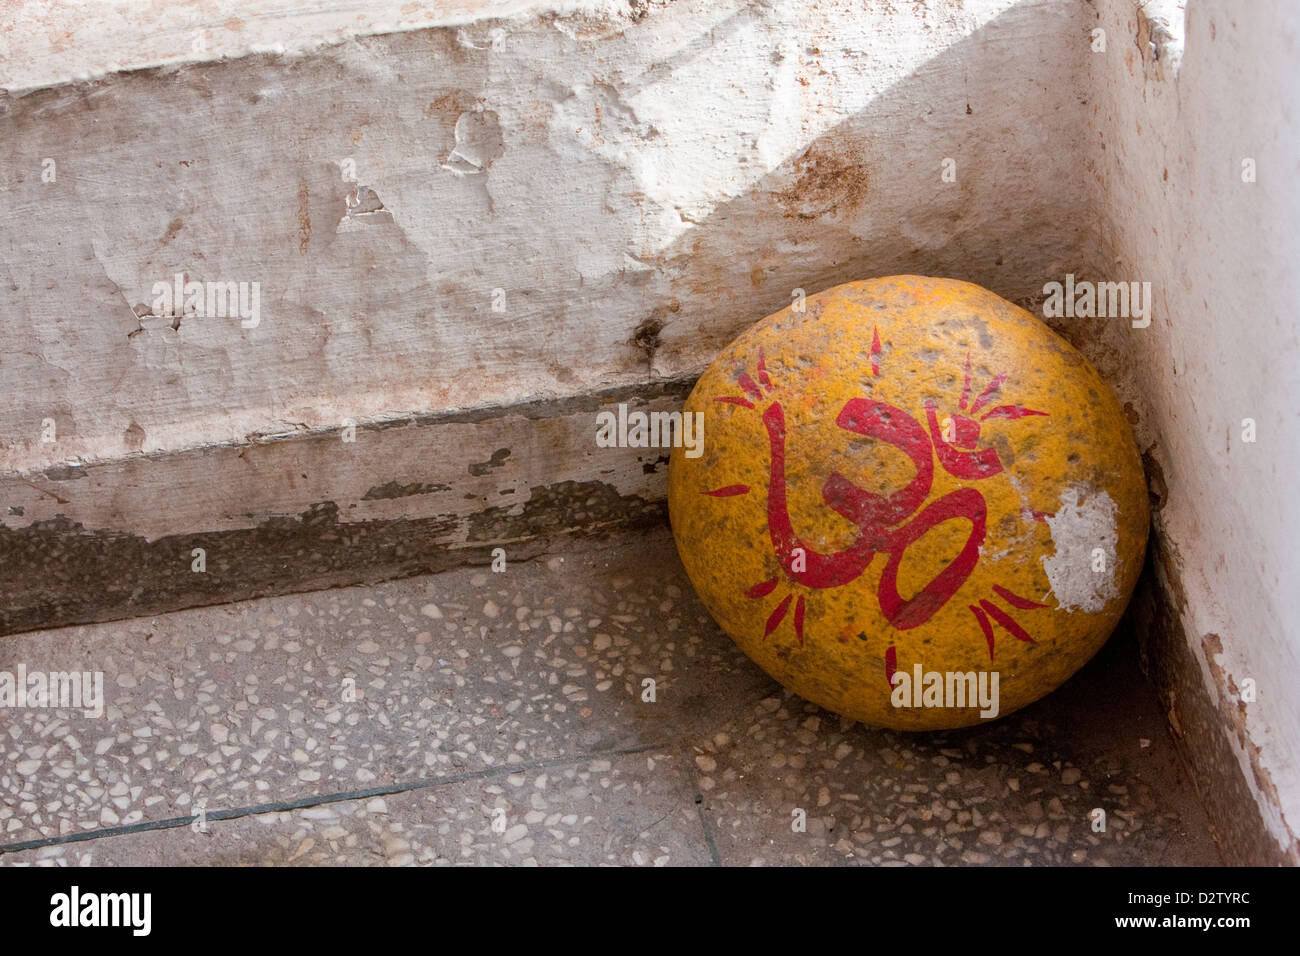 India, Rishikesh. Tera Manzil tempio indù. "Om" simbolo, Sanscrito suono usato all'inizio e alla fine dei sacri testi indù. Foto Stock